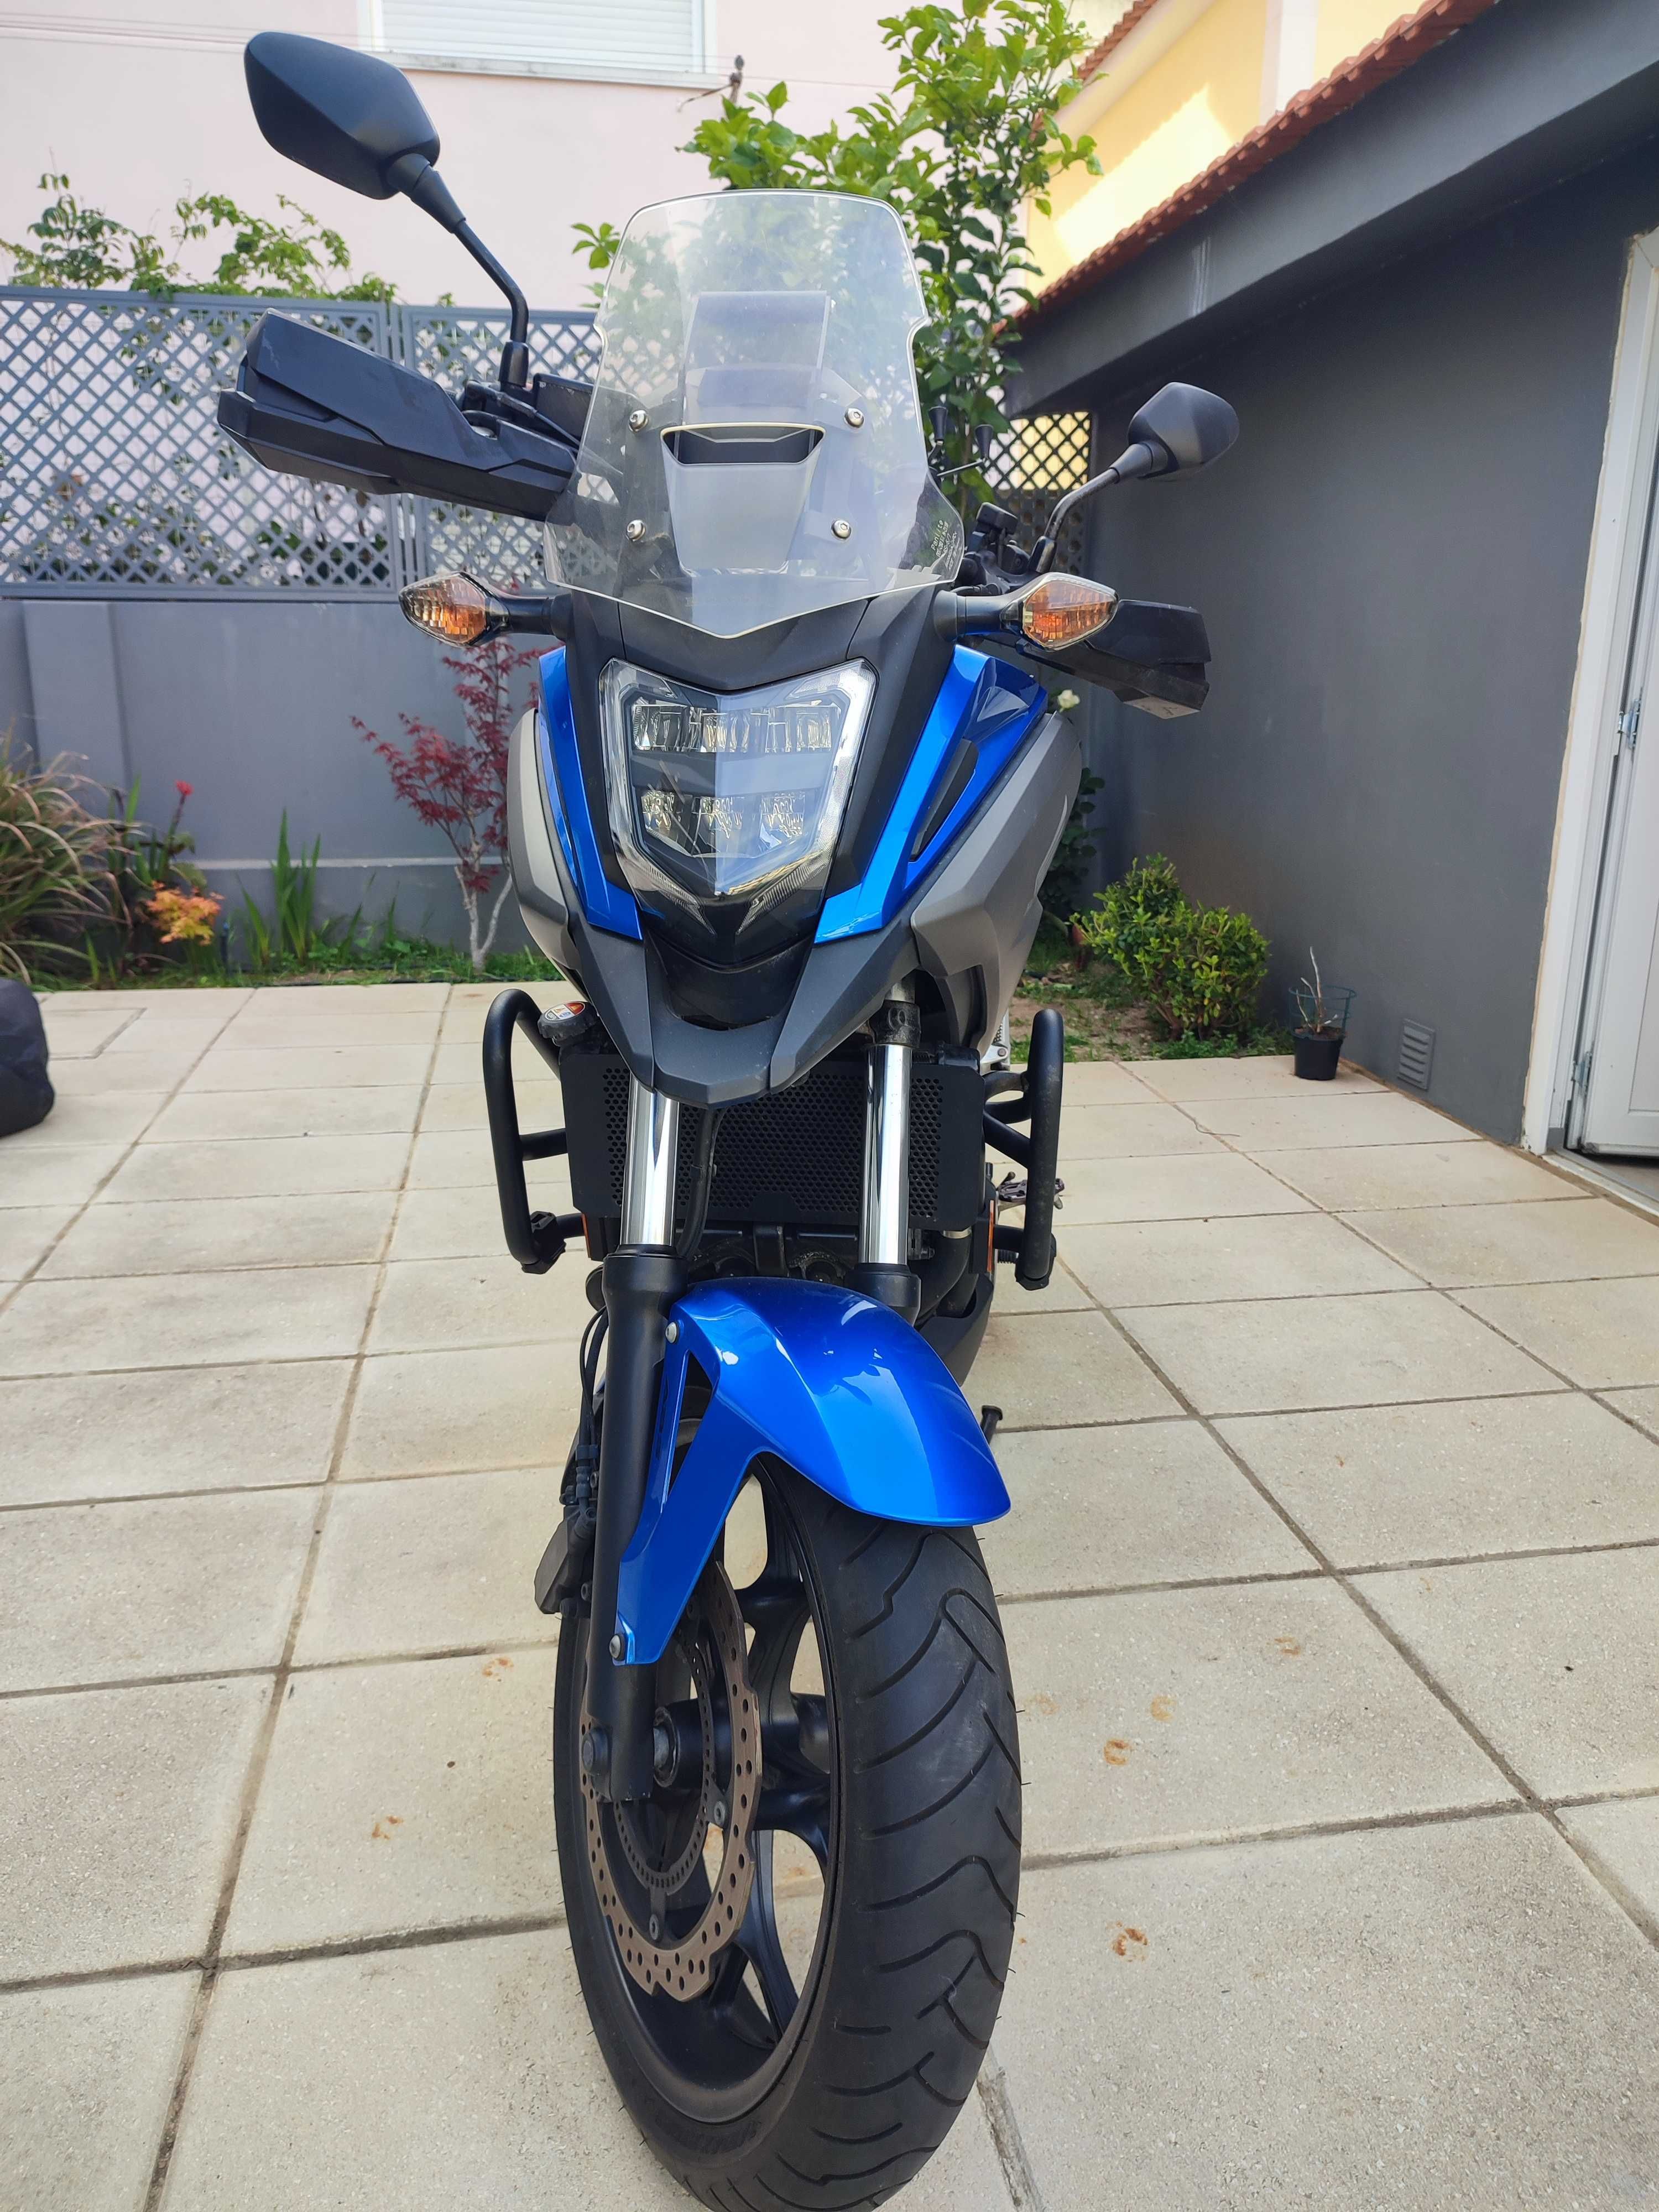 Honda 750X 2019, Azul com Kit de viagem